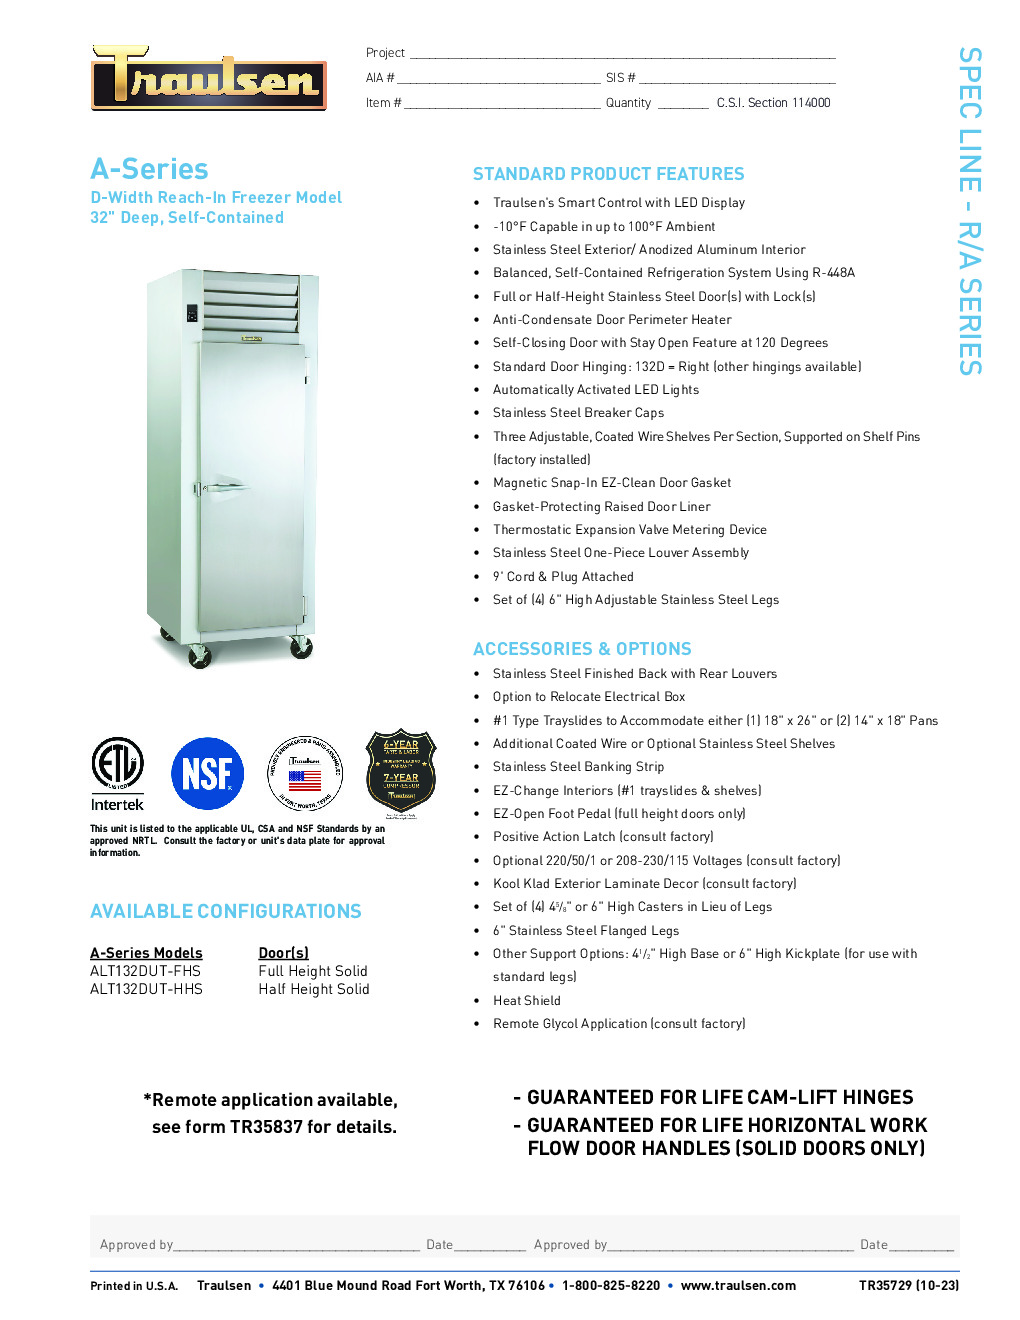 Traulsen ALT132DUT-HHS Reach-In Freezer